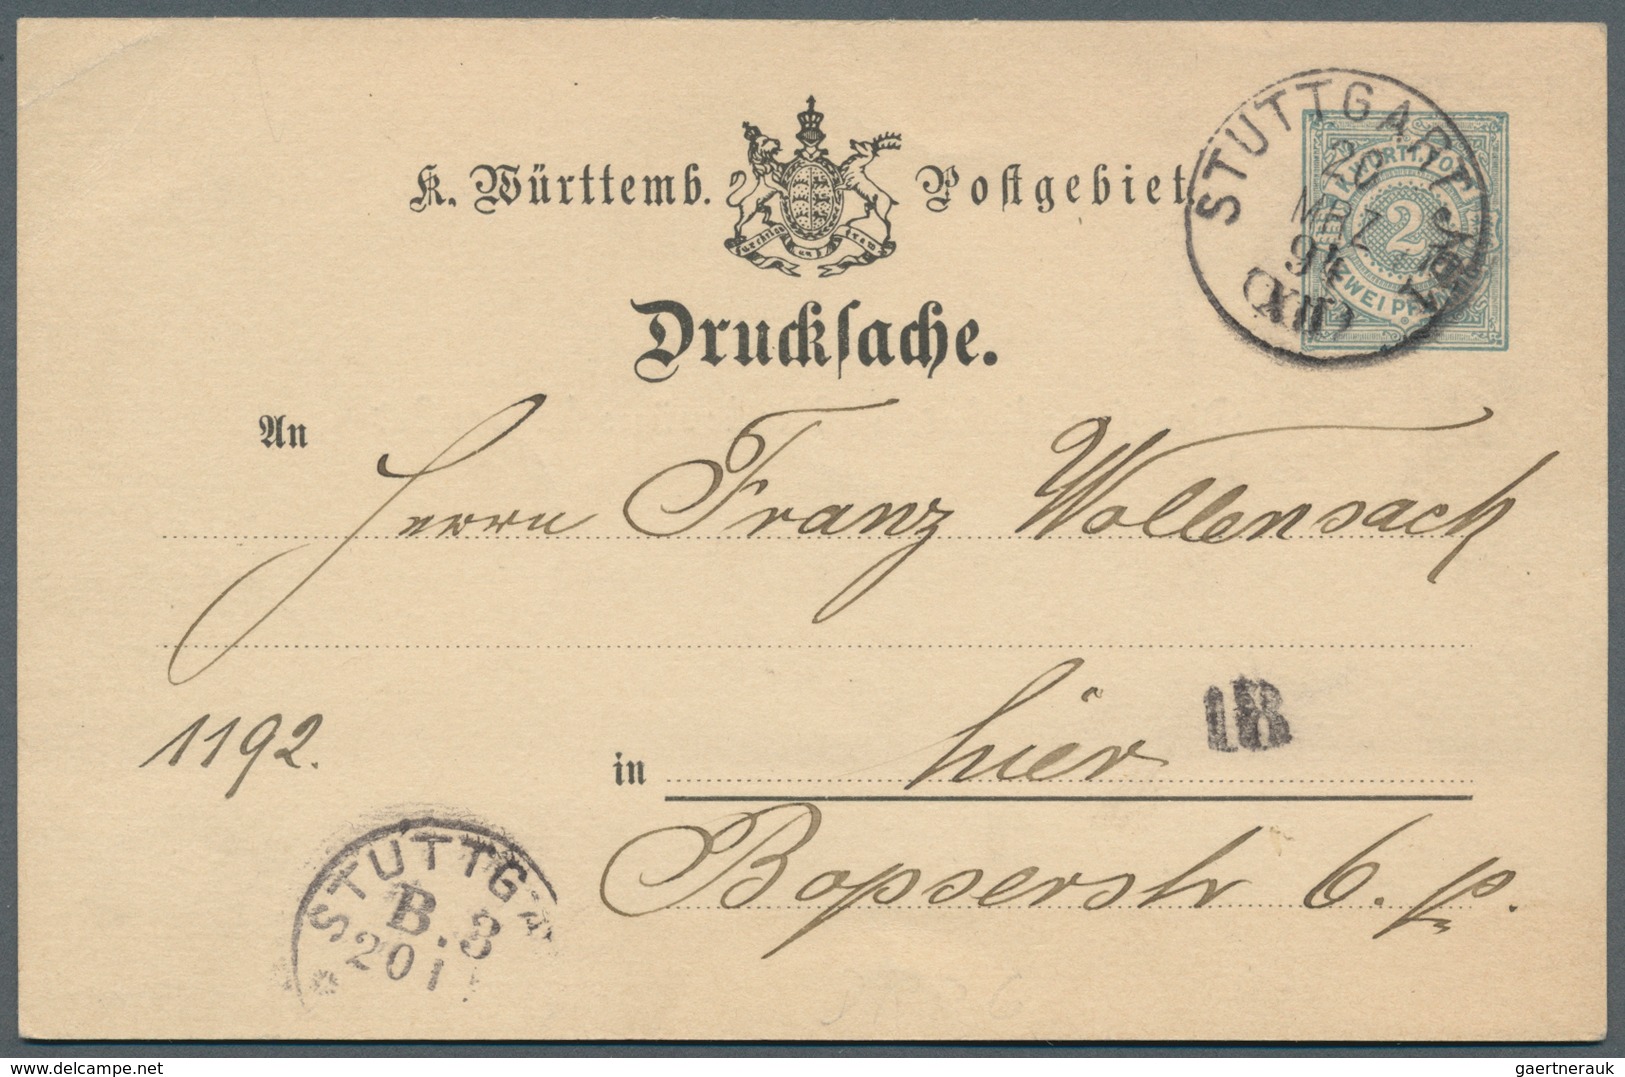 31364 Württemberg - Ganzsachen: 1862/1920, sehr umfangreiche Sammlung ab U 1 bis DPB 67, insgesamt 807 nur